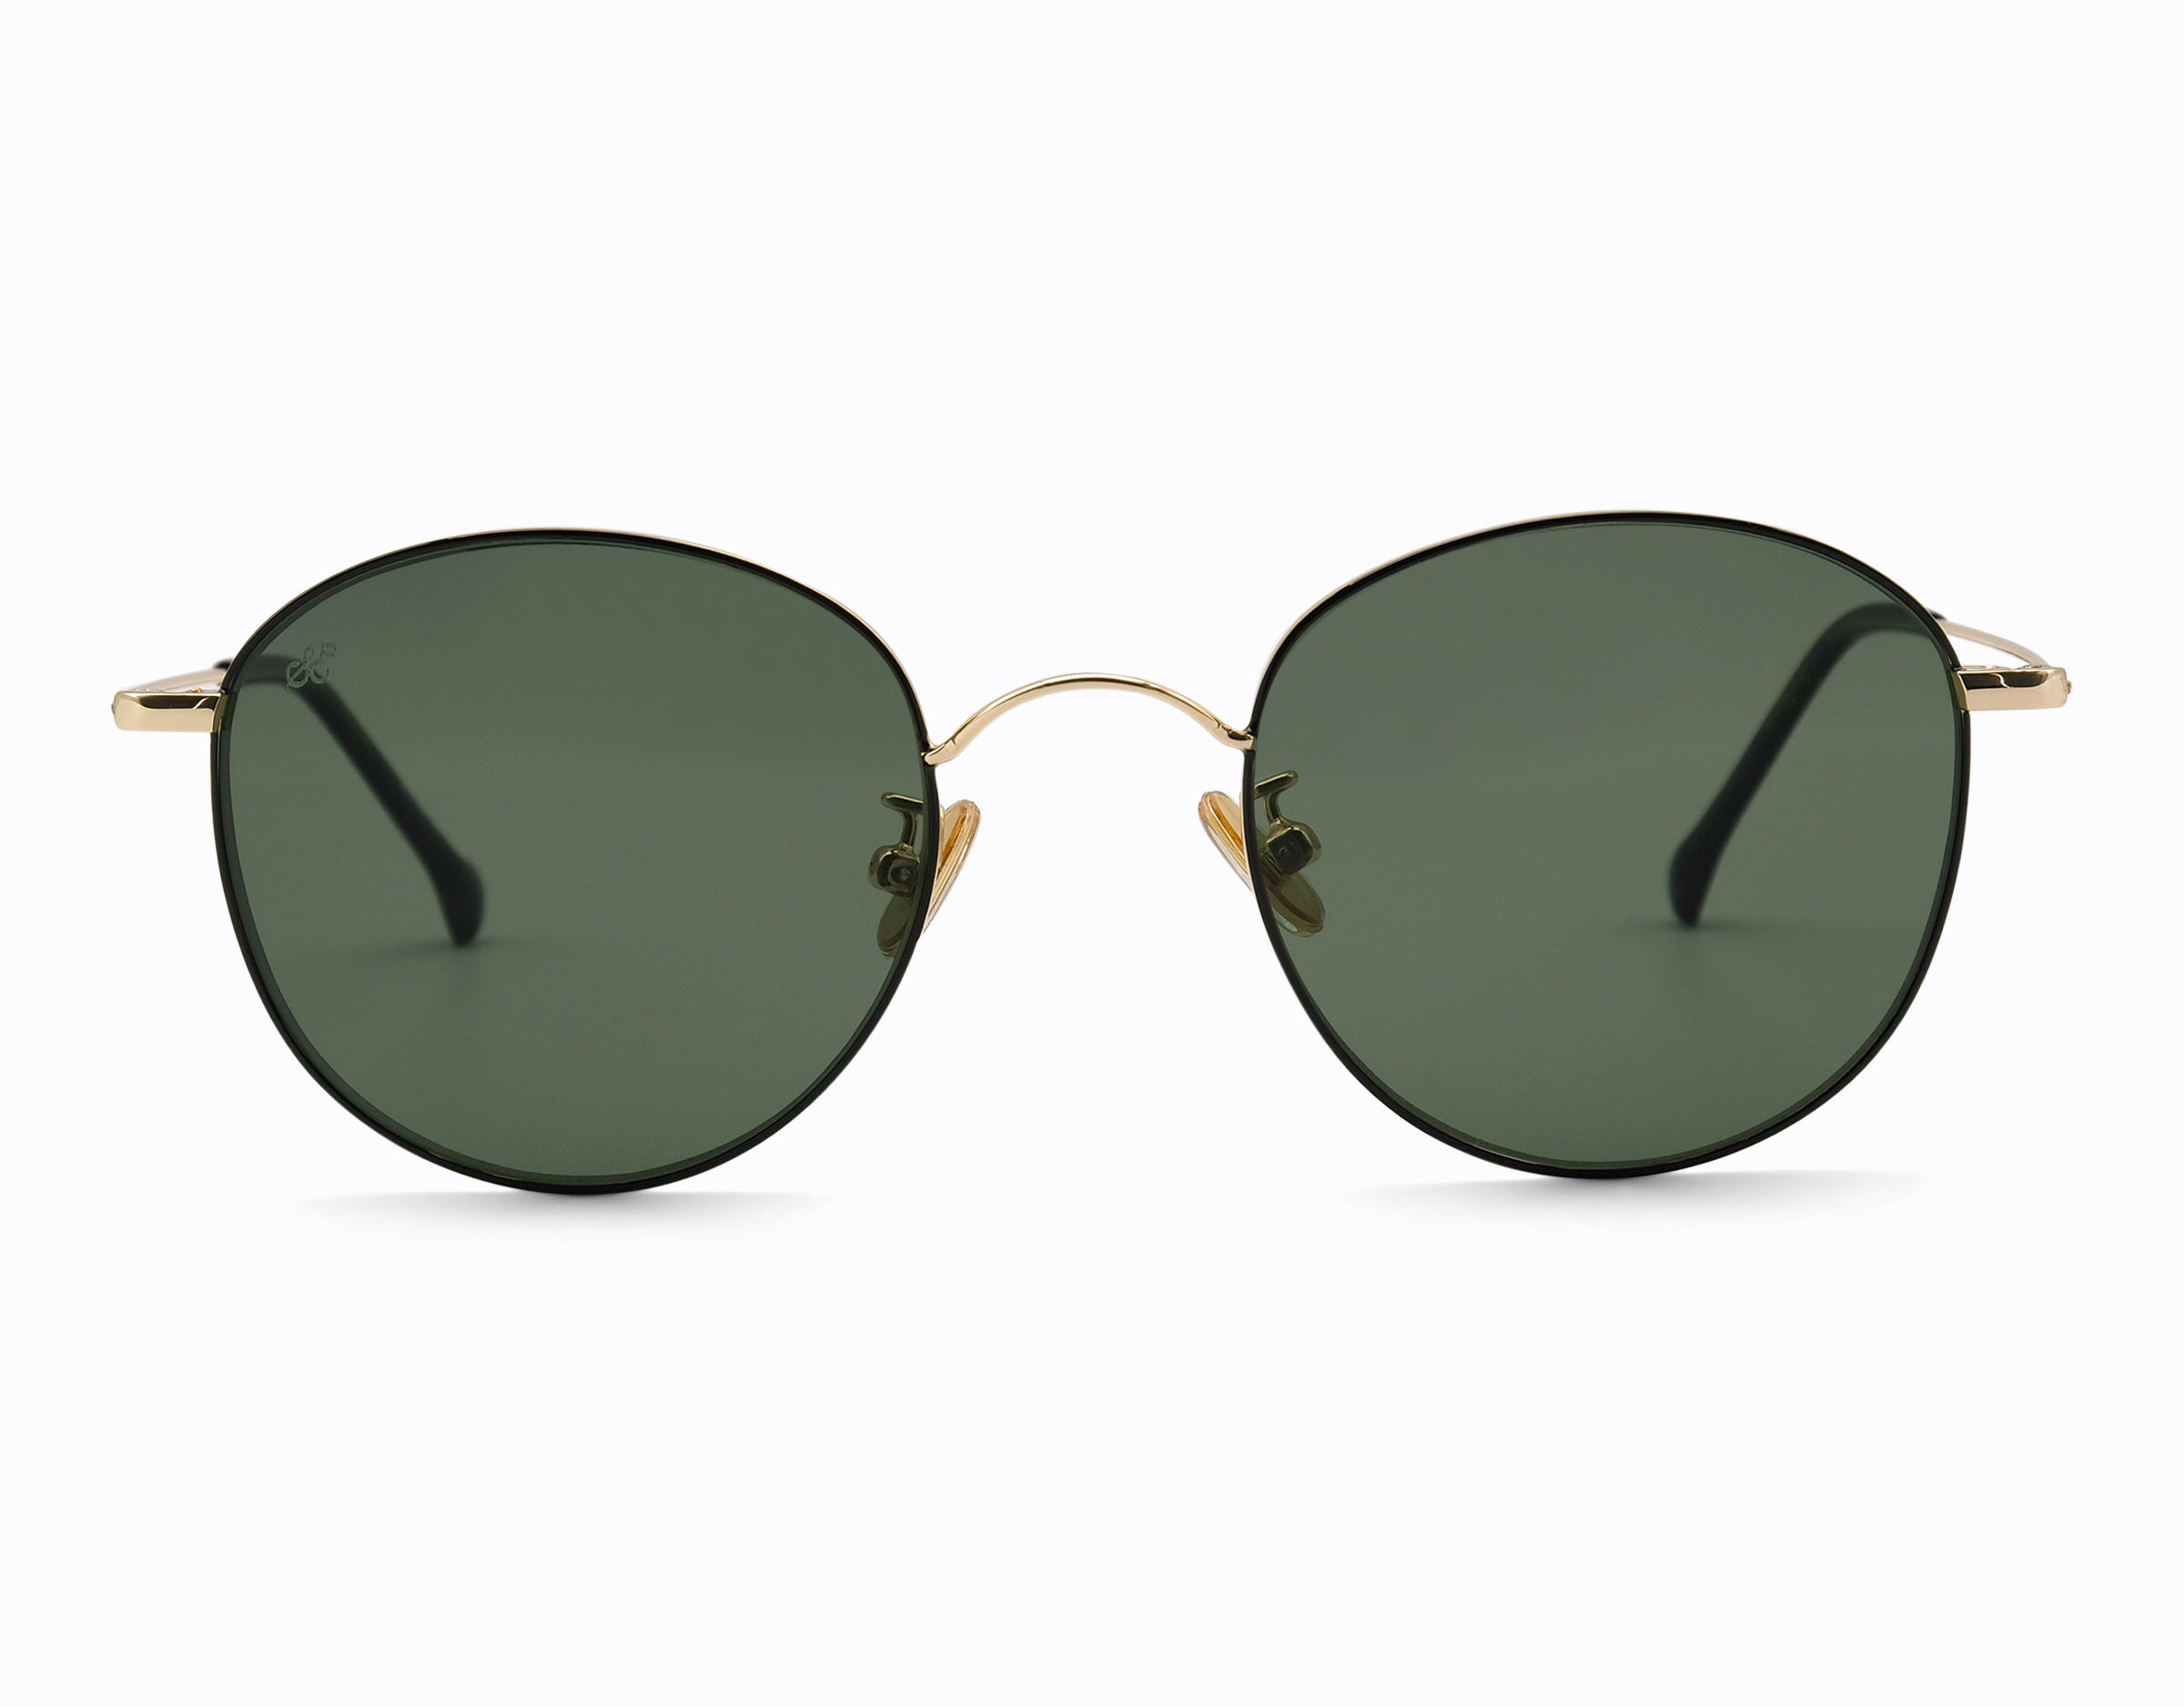 Adelaide Polarised Sunglasses SummerEyez Gold - Olive Green 